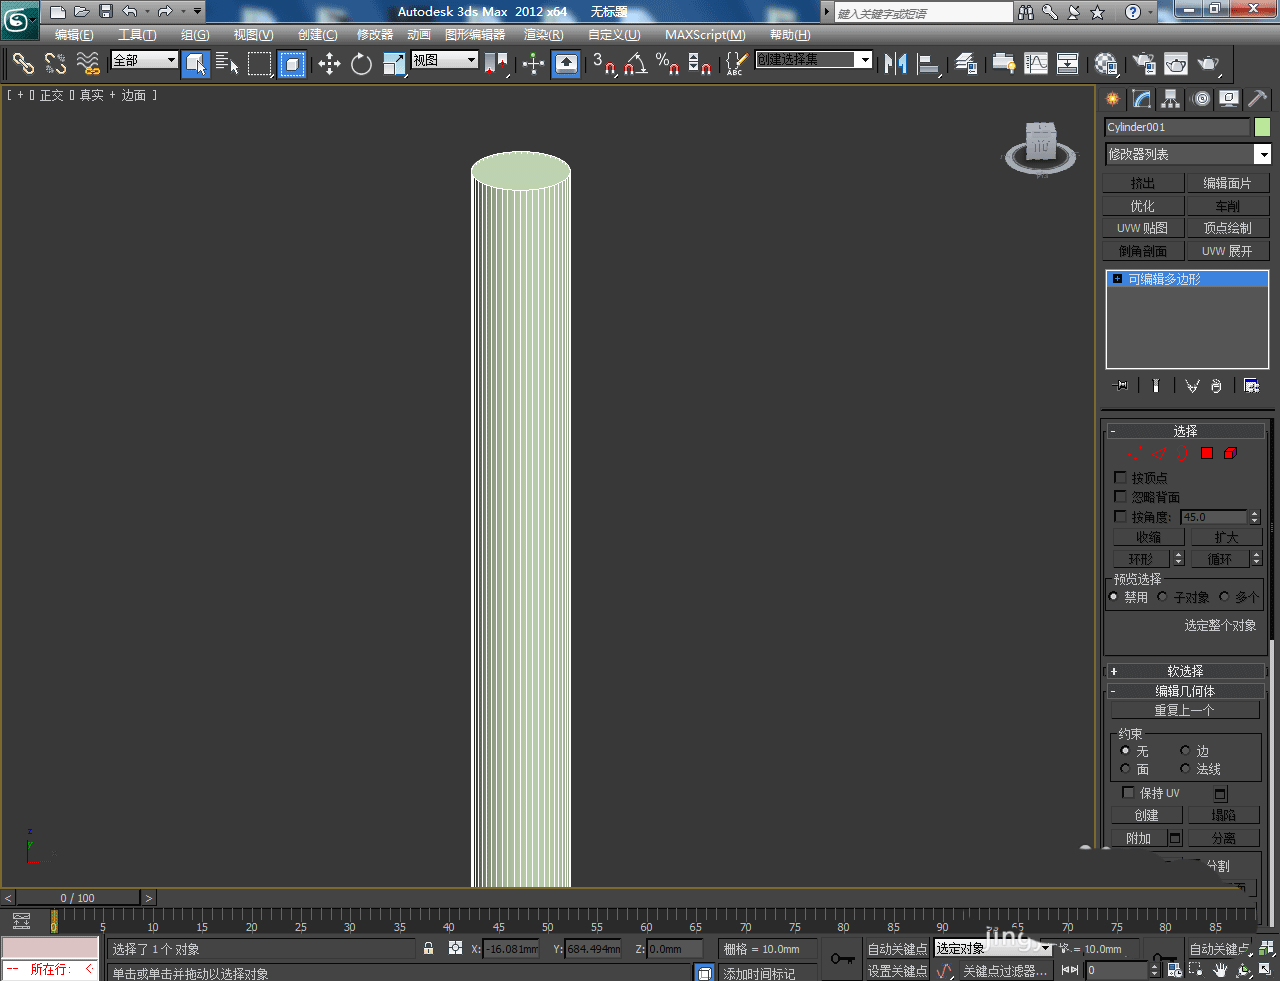 3Dmax怎么建模铁筷子? 3Dmax筷子模型的创建方法